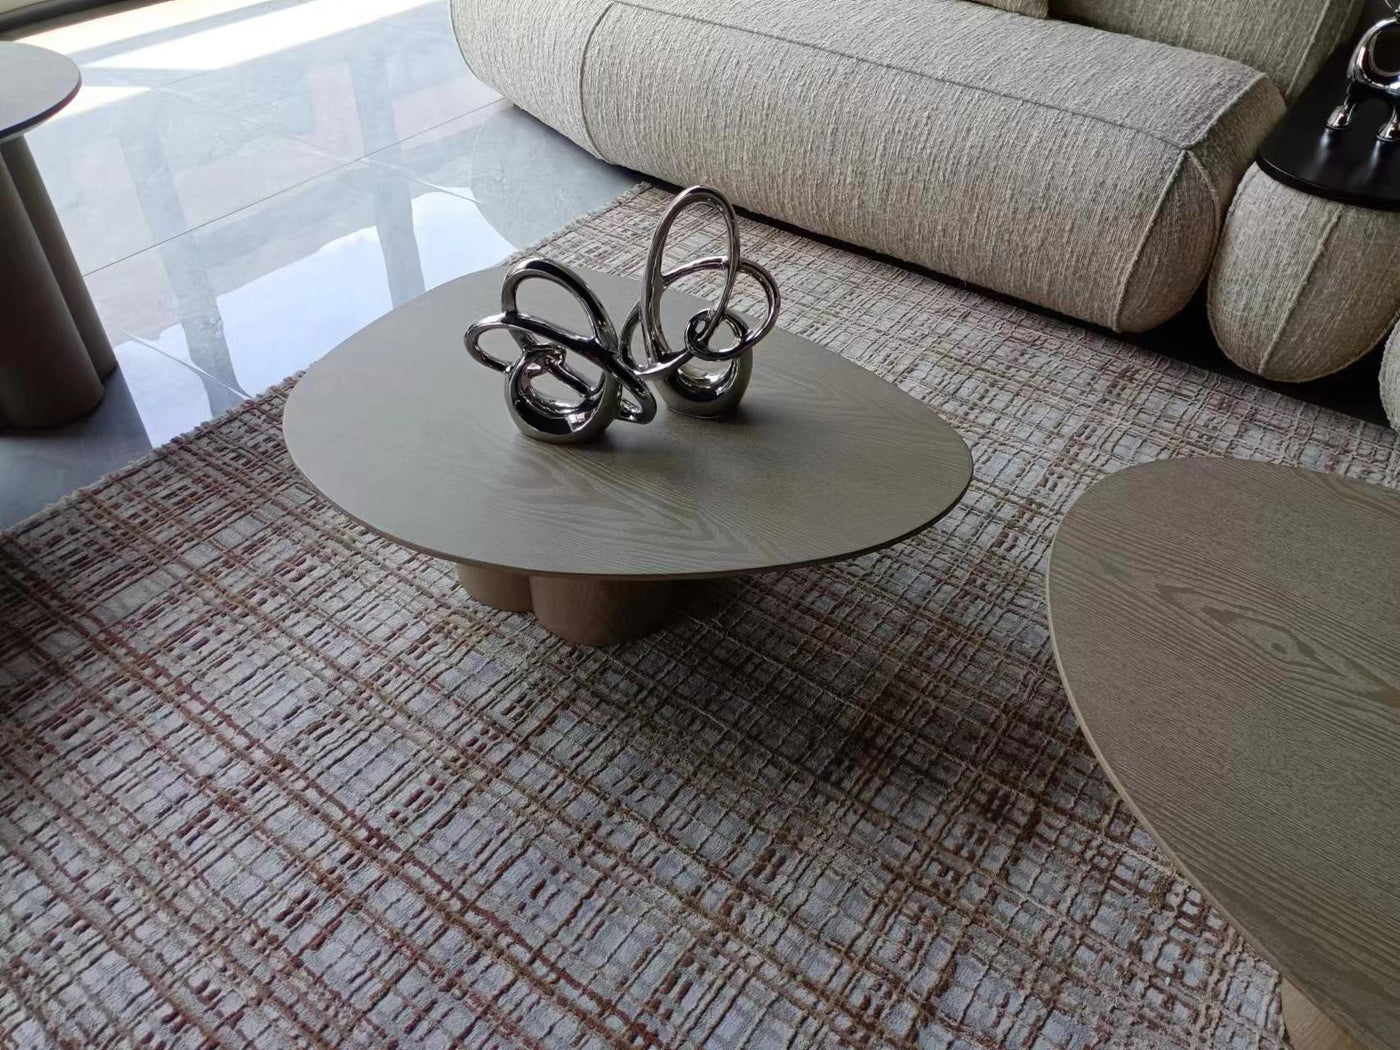 Quattro Coffee Table Small - Future Classics Furniture